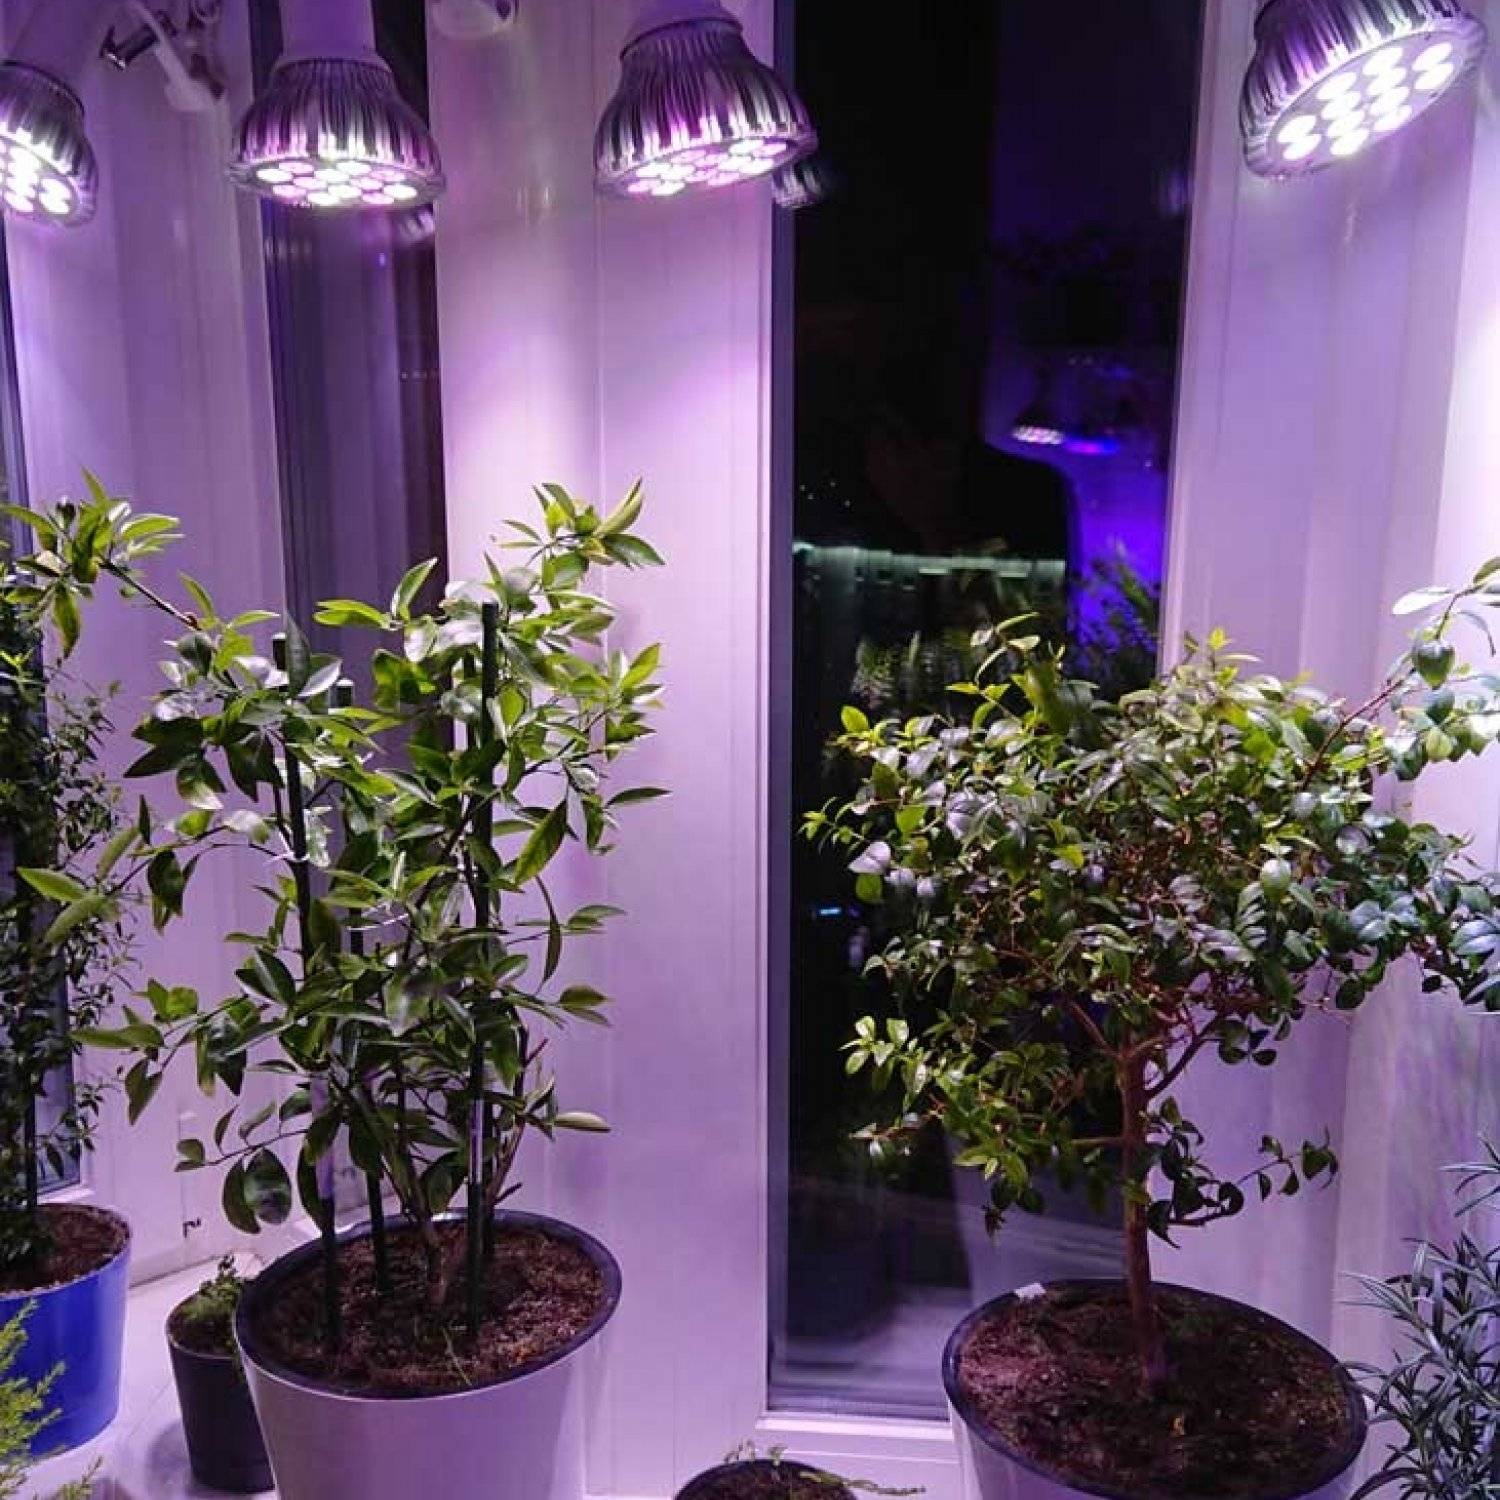 Люминесцентные лампы для растений, подсветка дневного света